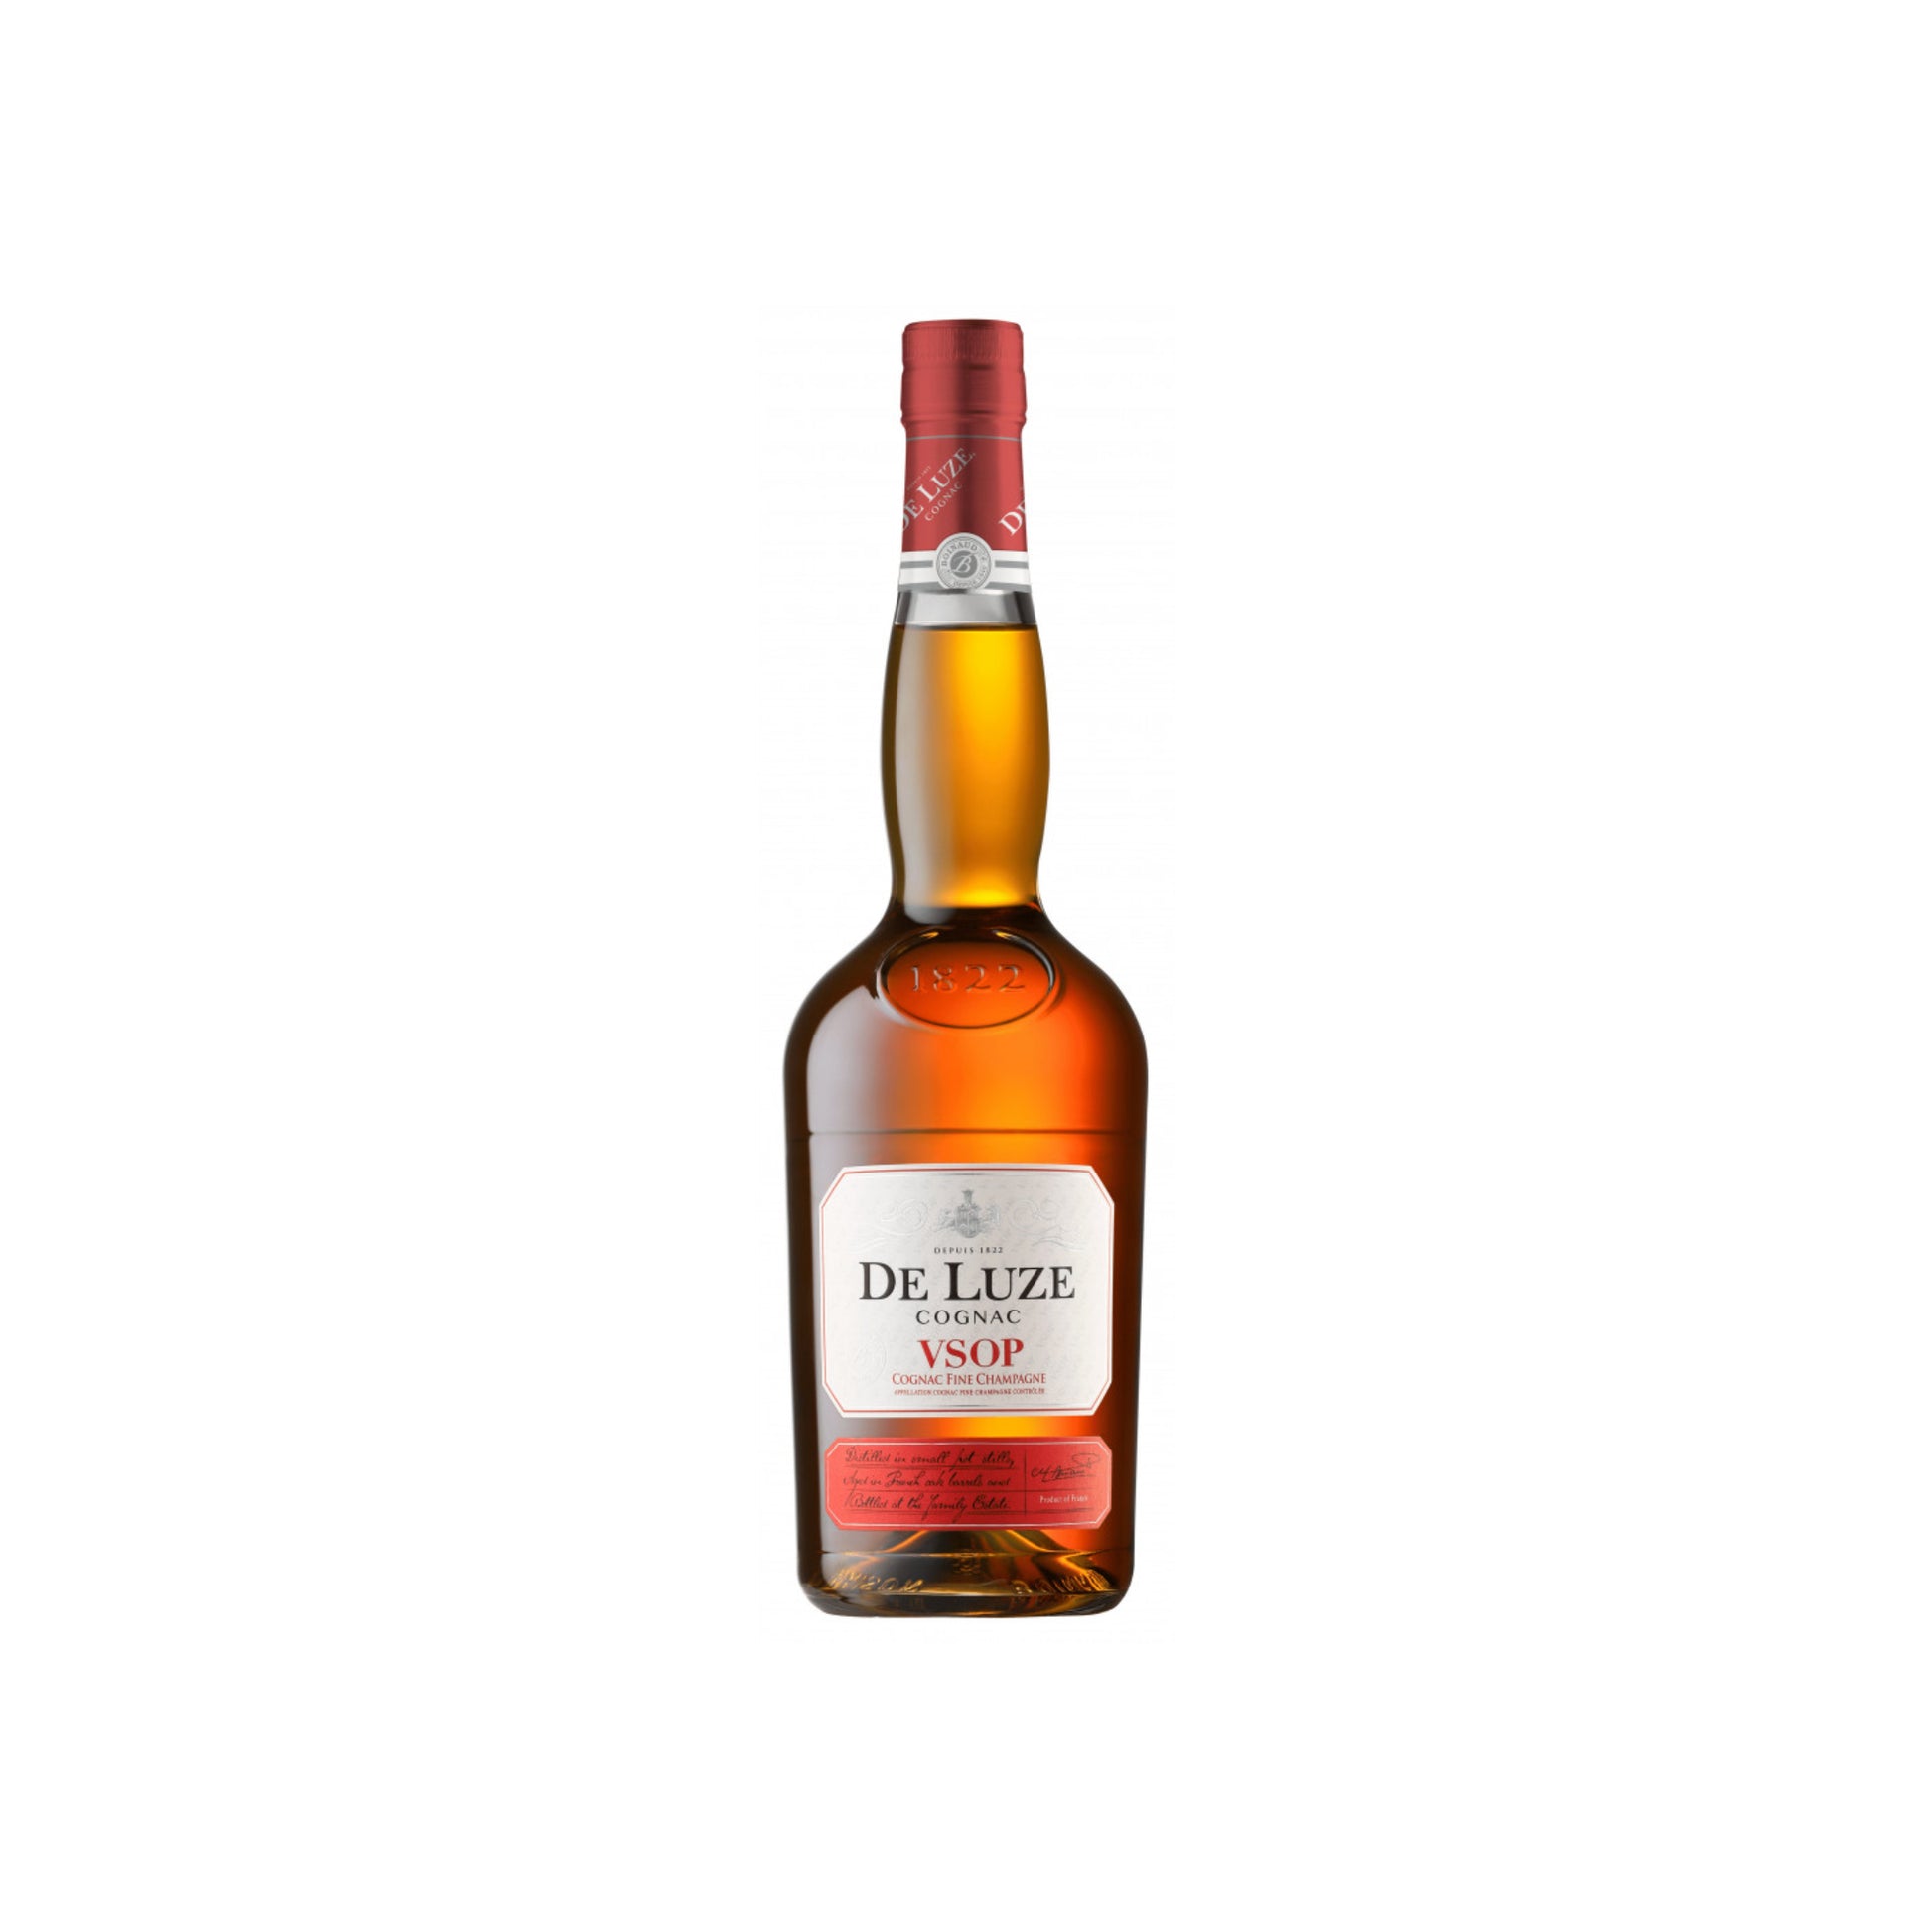 De Luze VSOP Cognac - Liquor Geeks